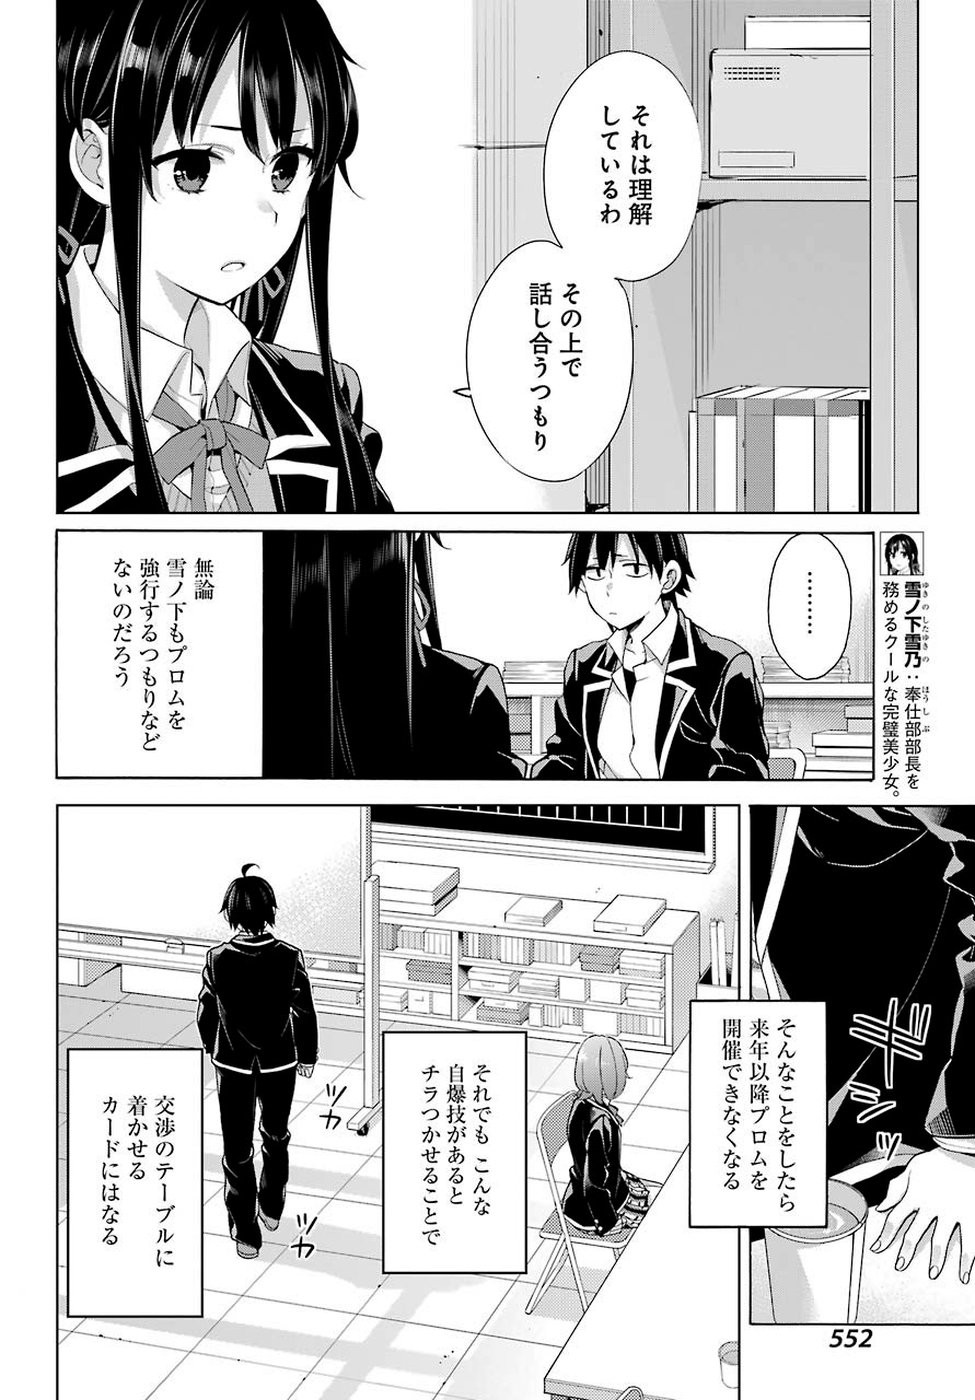 Yahari Ore no Seishun Rabukome wa Machigatte Iru. - Monologue - Chapter 78 - Page 4